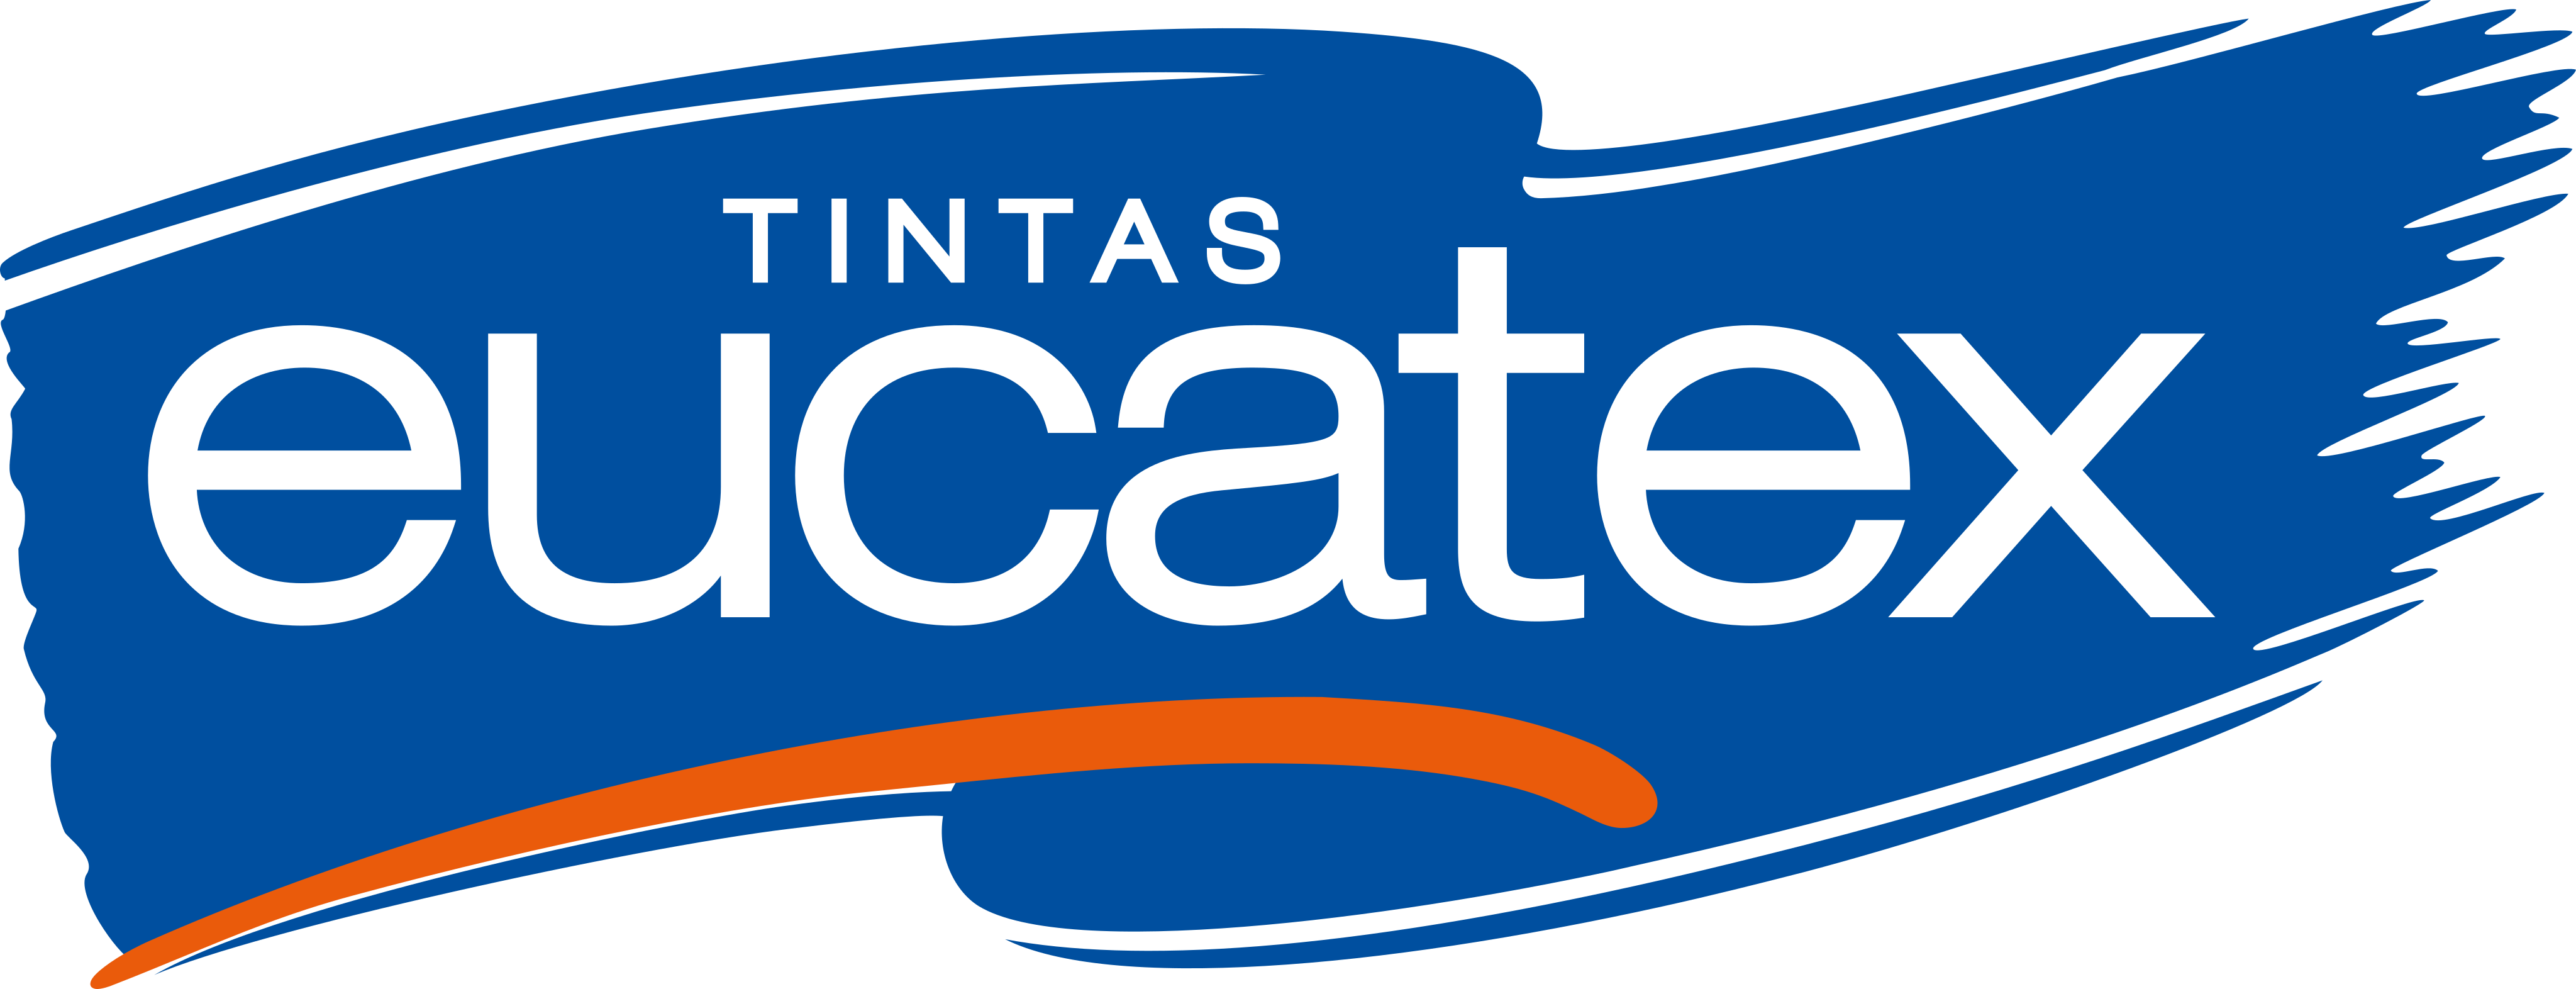 Eucatex Tintas Logo.